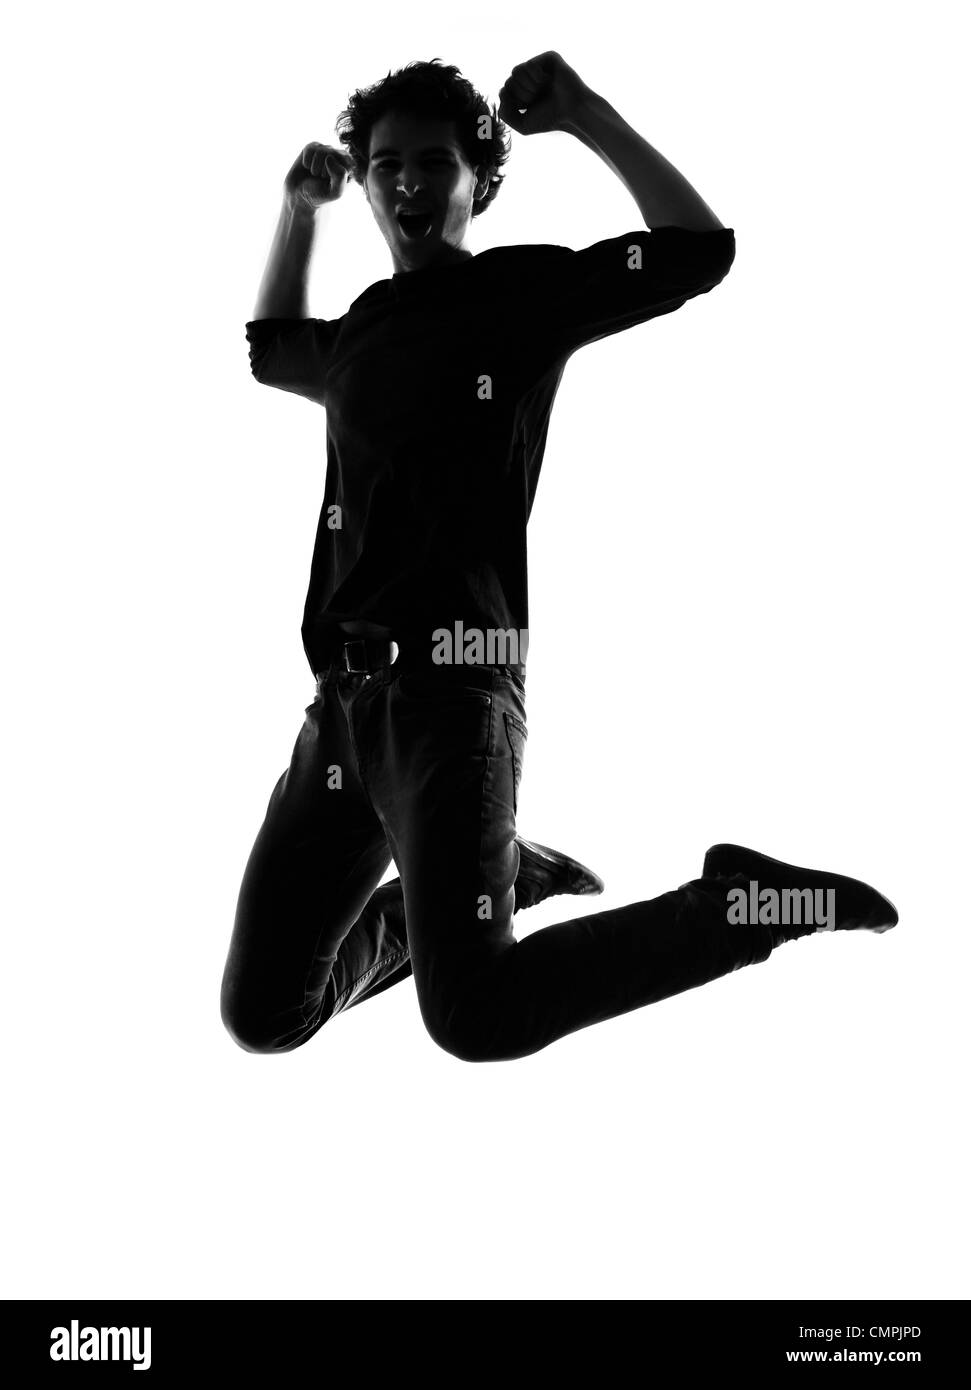 junger Mann springt glücklich Silhouette im Studio isoliert auf weißem Hintergrund Stockfoto